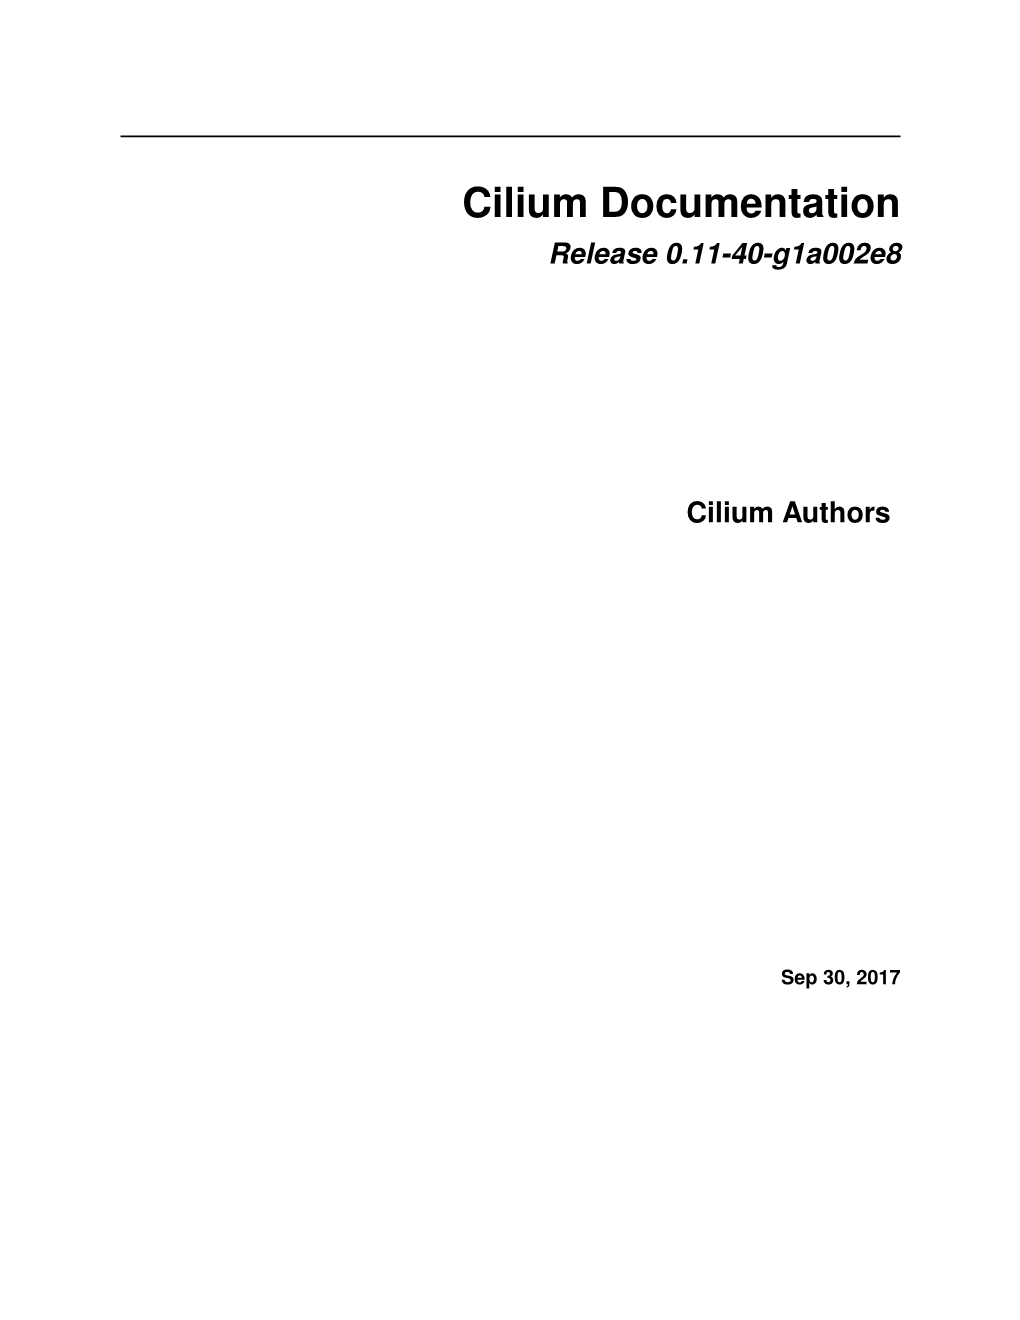 Cilium Documentation Release 0.11-40-G1a002e8